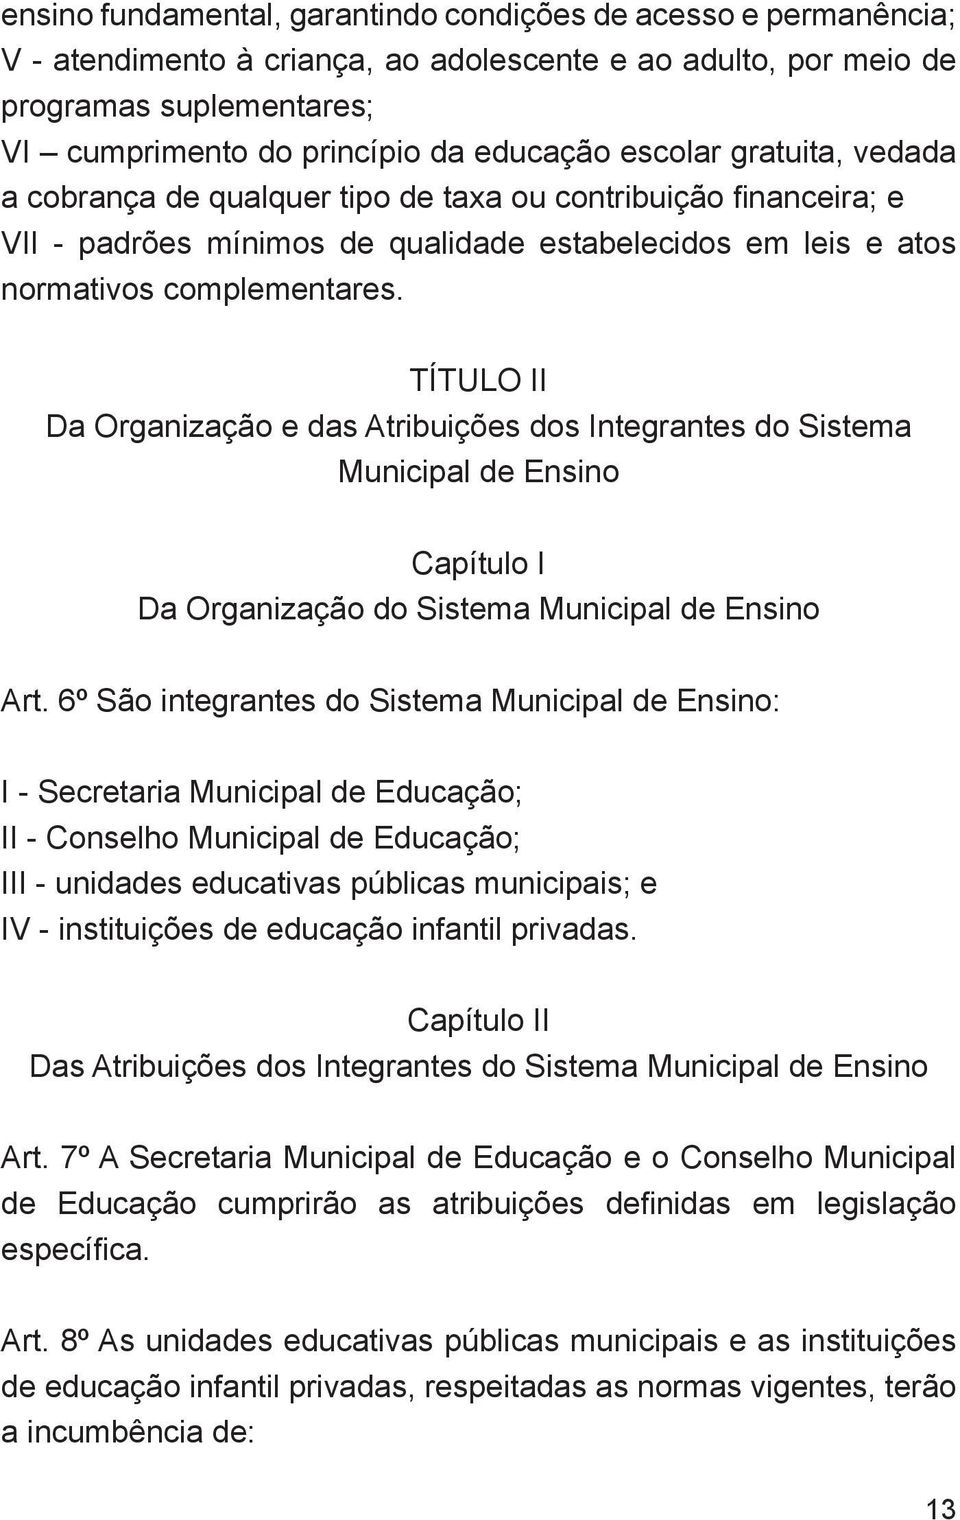 TÍTULO II Da Organização e das Atribuições dos Integrantes do Sistema Municipal de Ensino Capítulo I Da Organização do Sistema Municipal de Ensino Art.